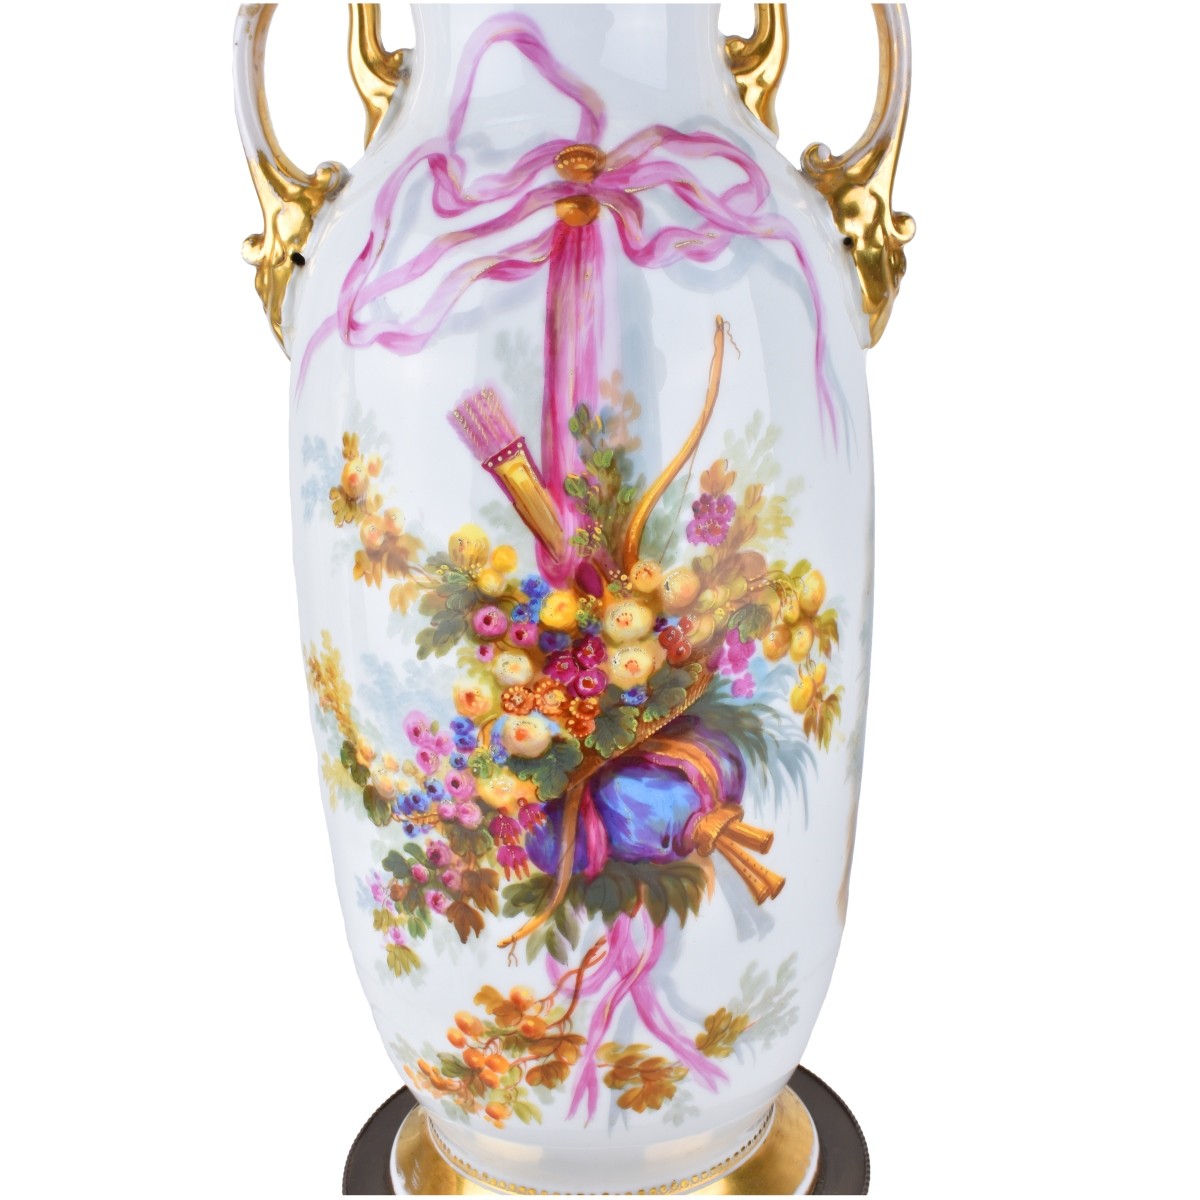 Old Paris Porcelain Vases as Lamps